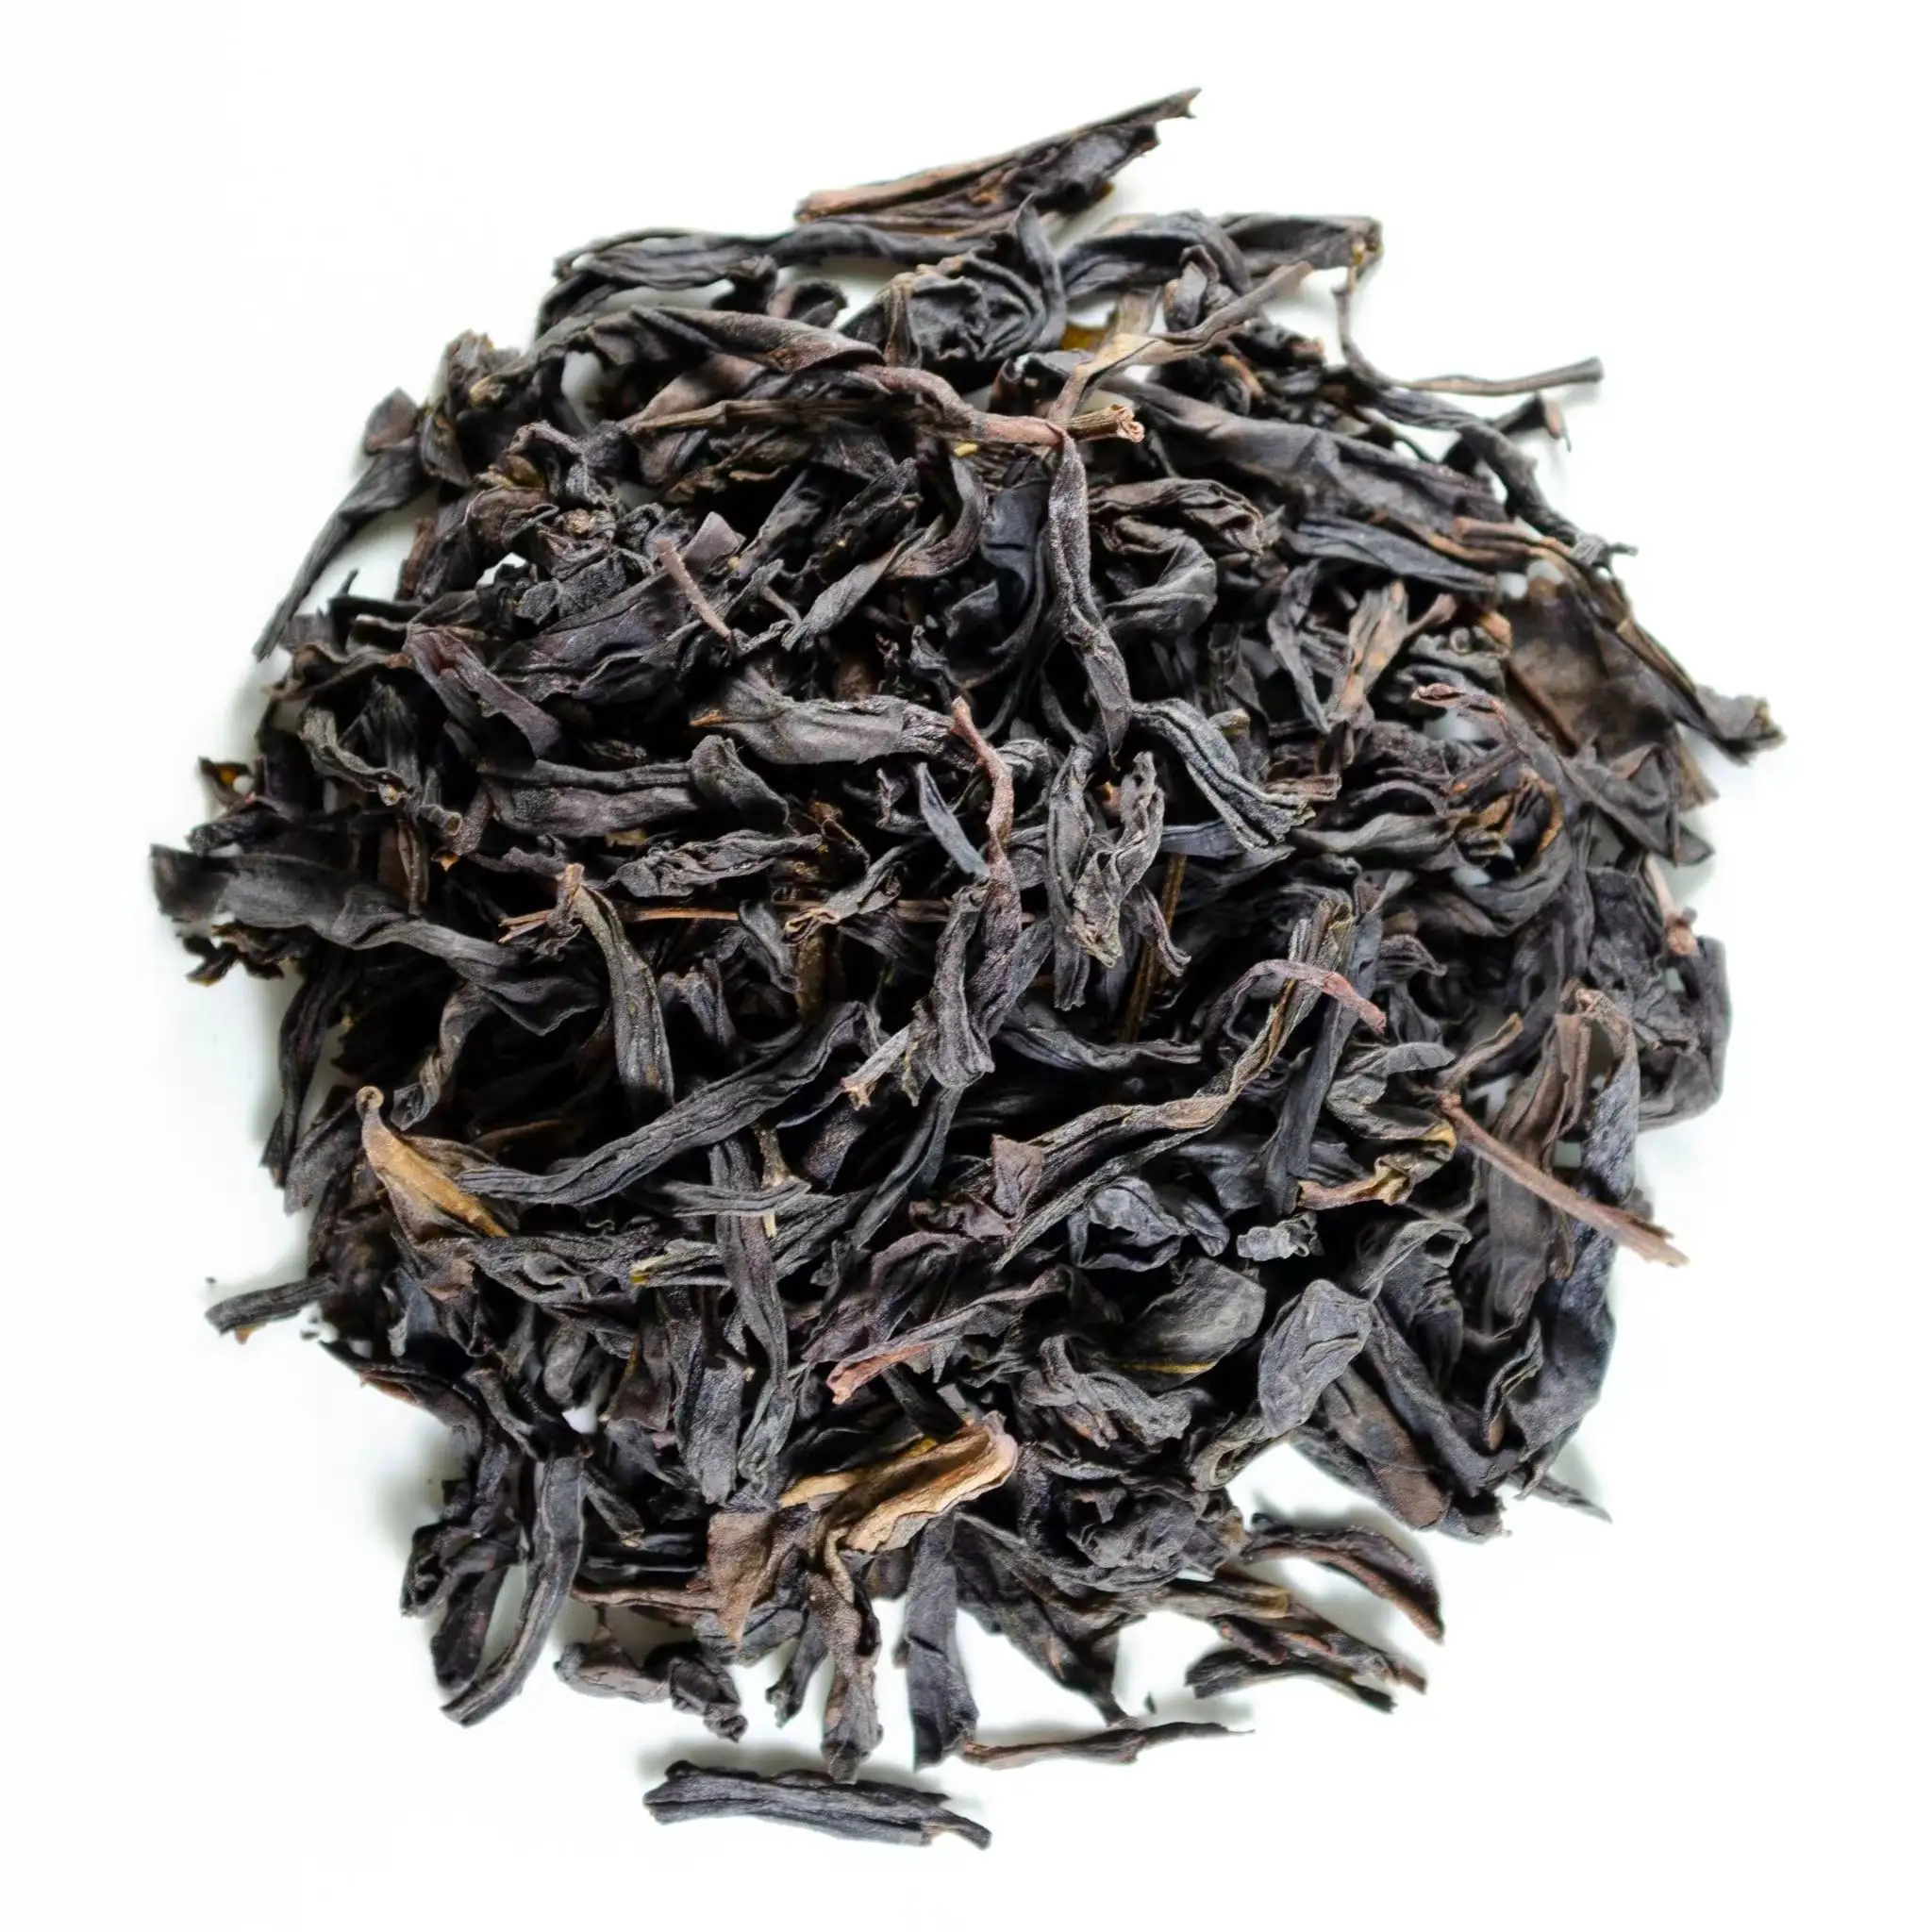 Cheap Price Hot Selling Bulk Wholesale Tea Manufacturers Yashi Xiang Guangdong Phoenix Dan Cong Oolong Tea